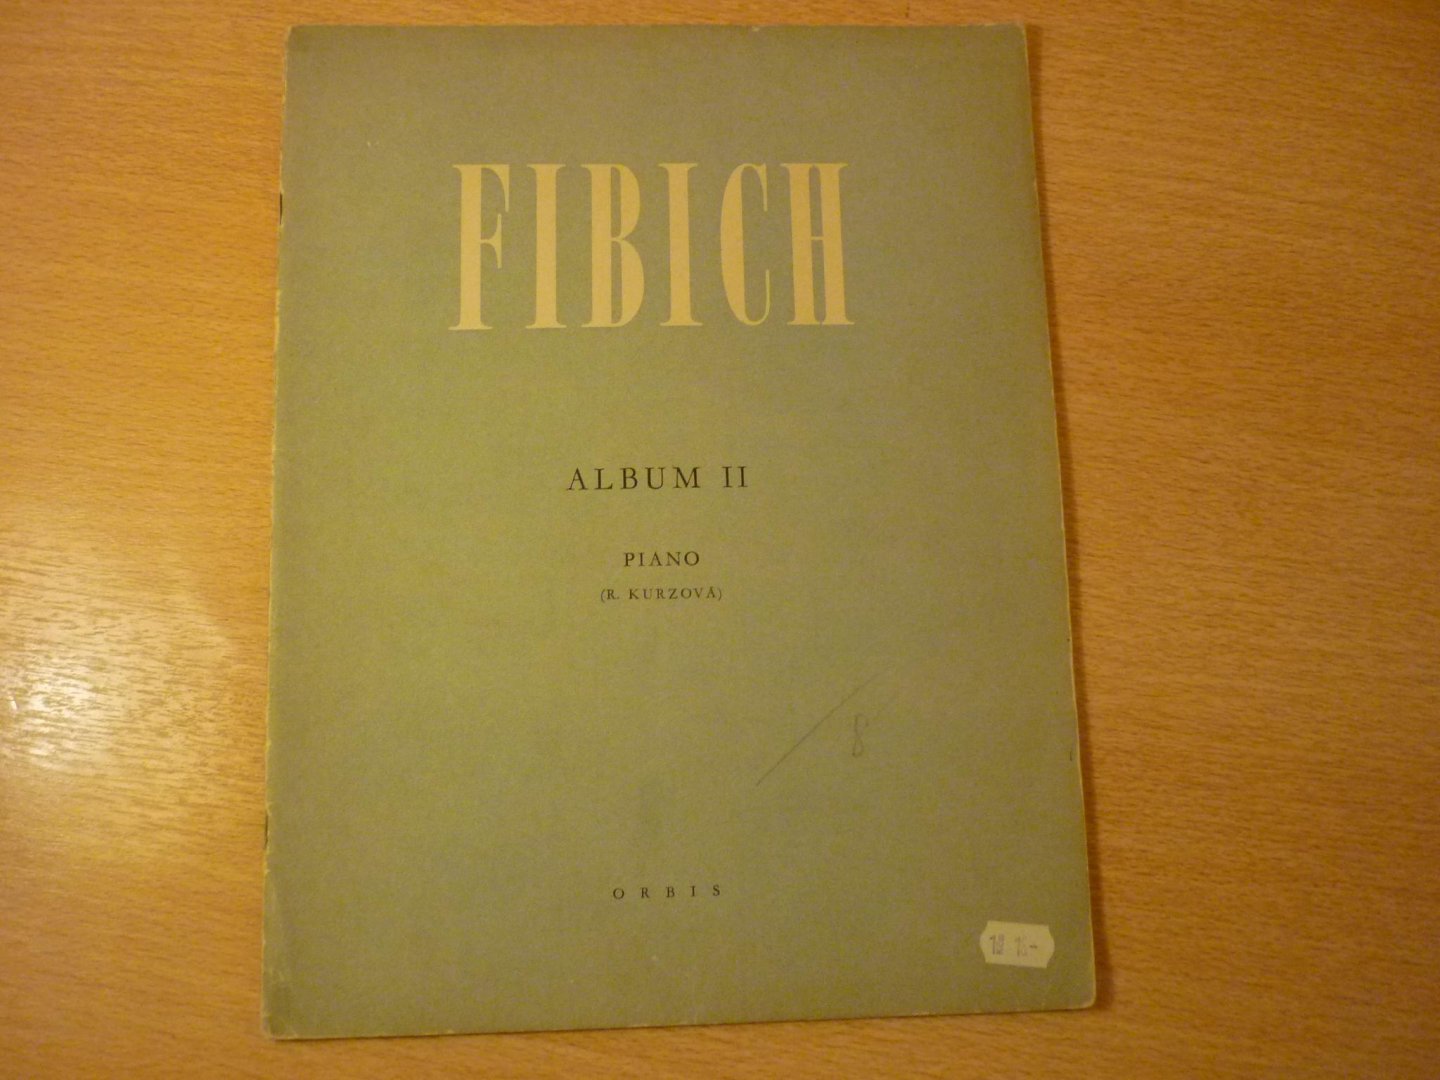 Fibich; Zdenĕk  (1850 - 1900) - Album II; piano solo songbook